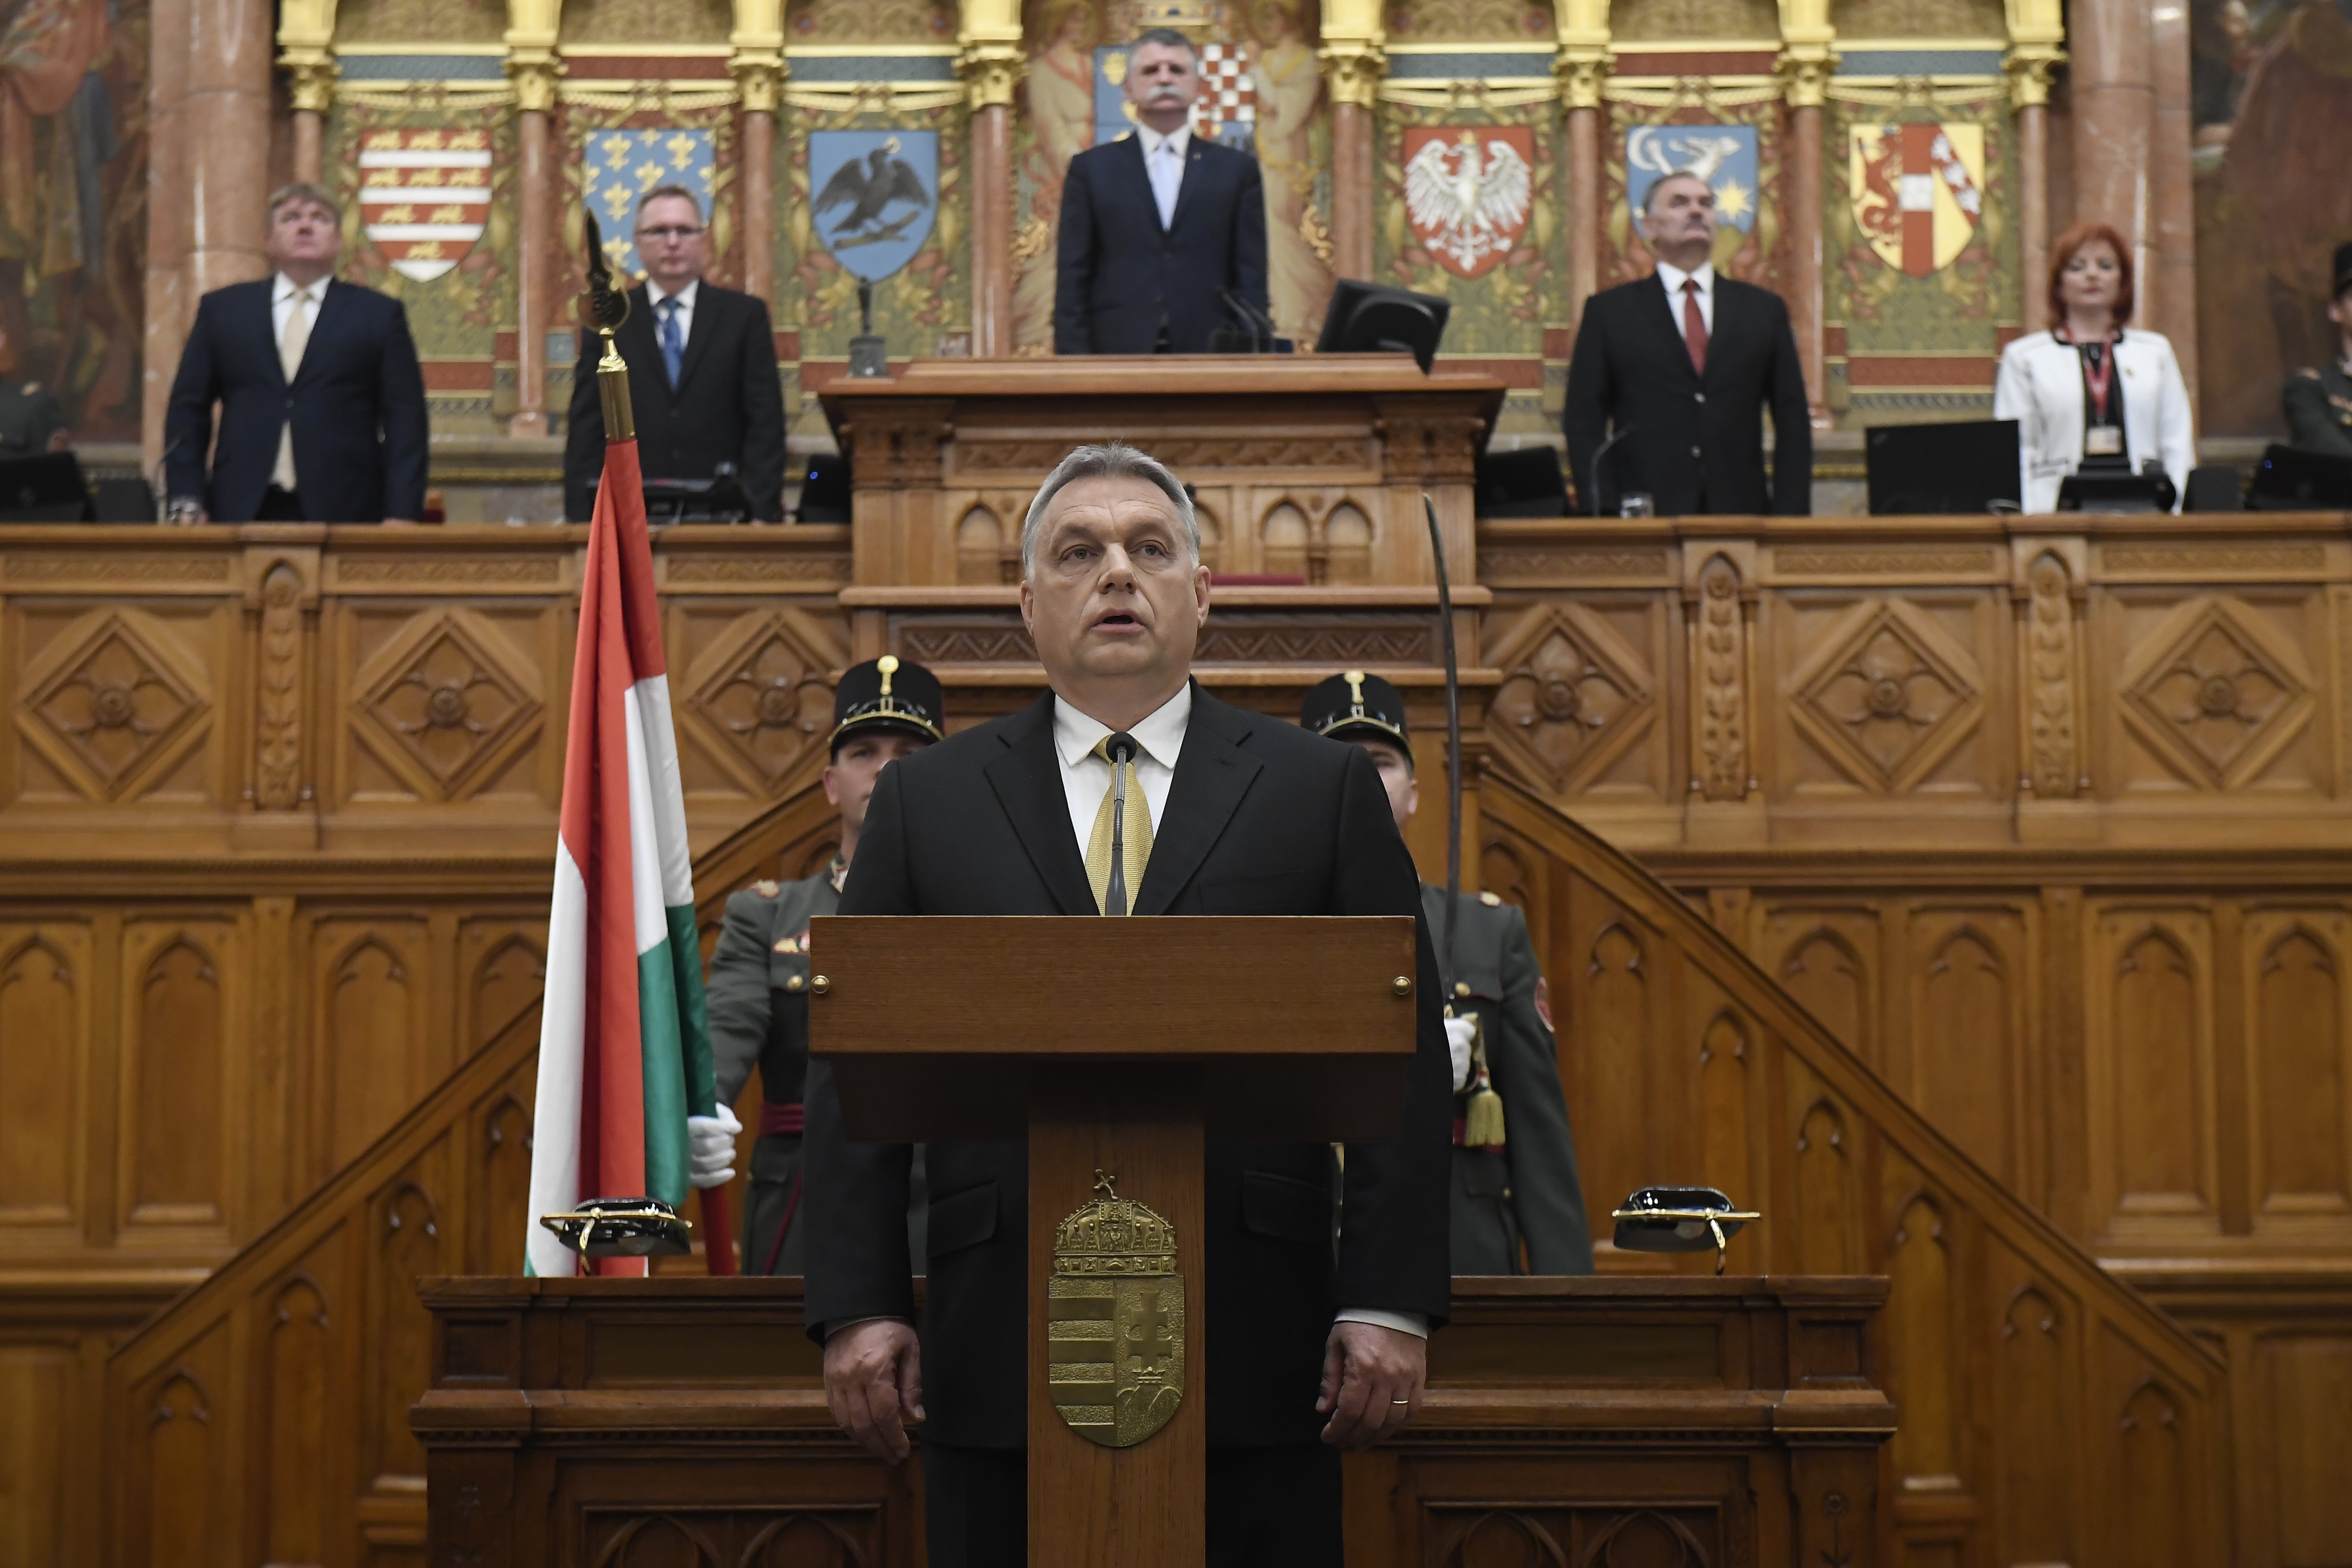 Negyedszerre választották újra miniszterelnökké Orbán Viktort